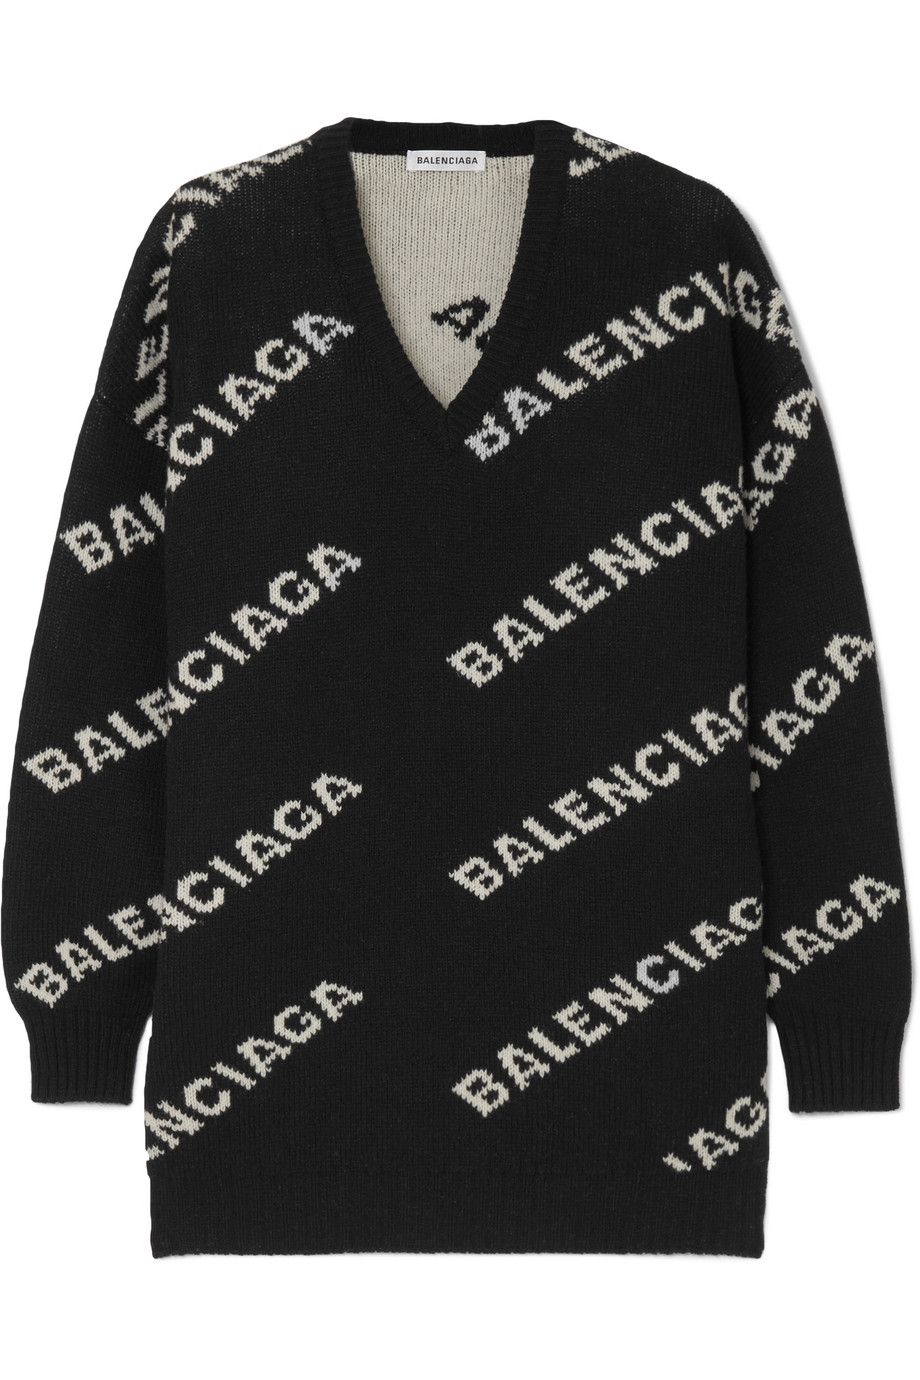 Jersey de Balenciaga en color negro